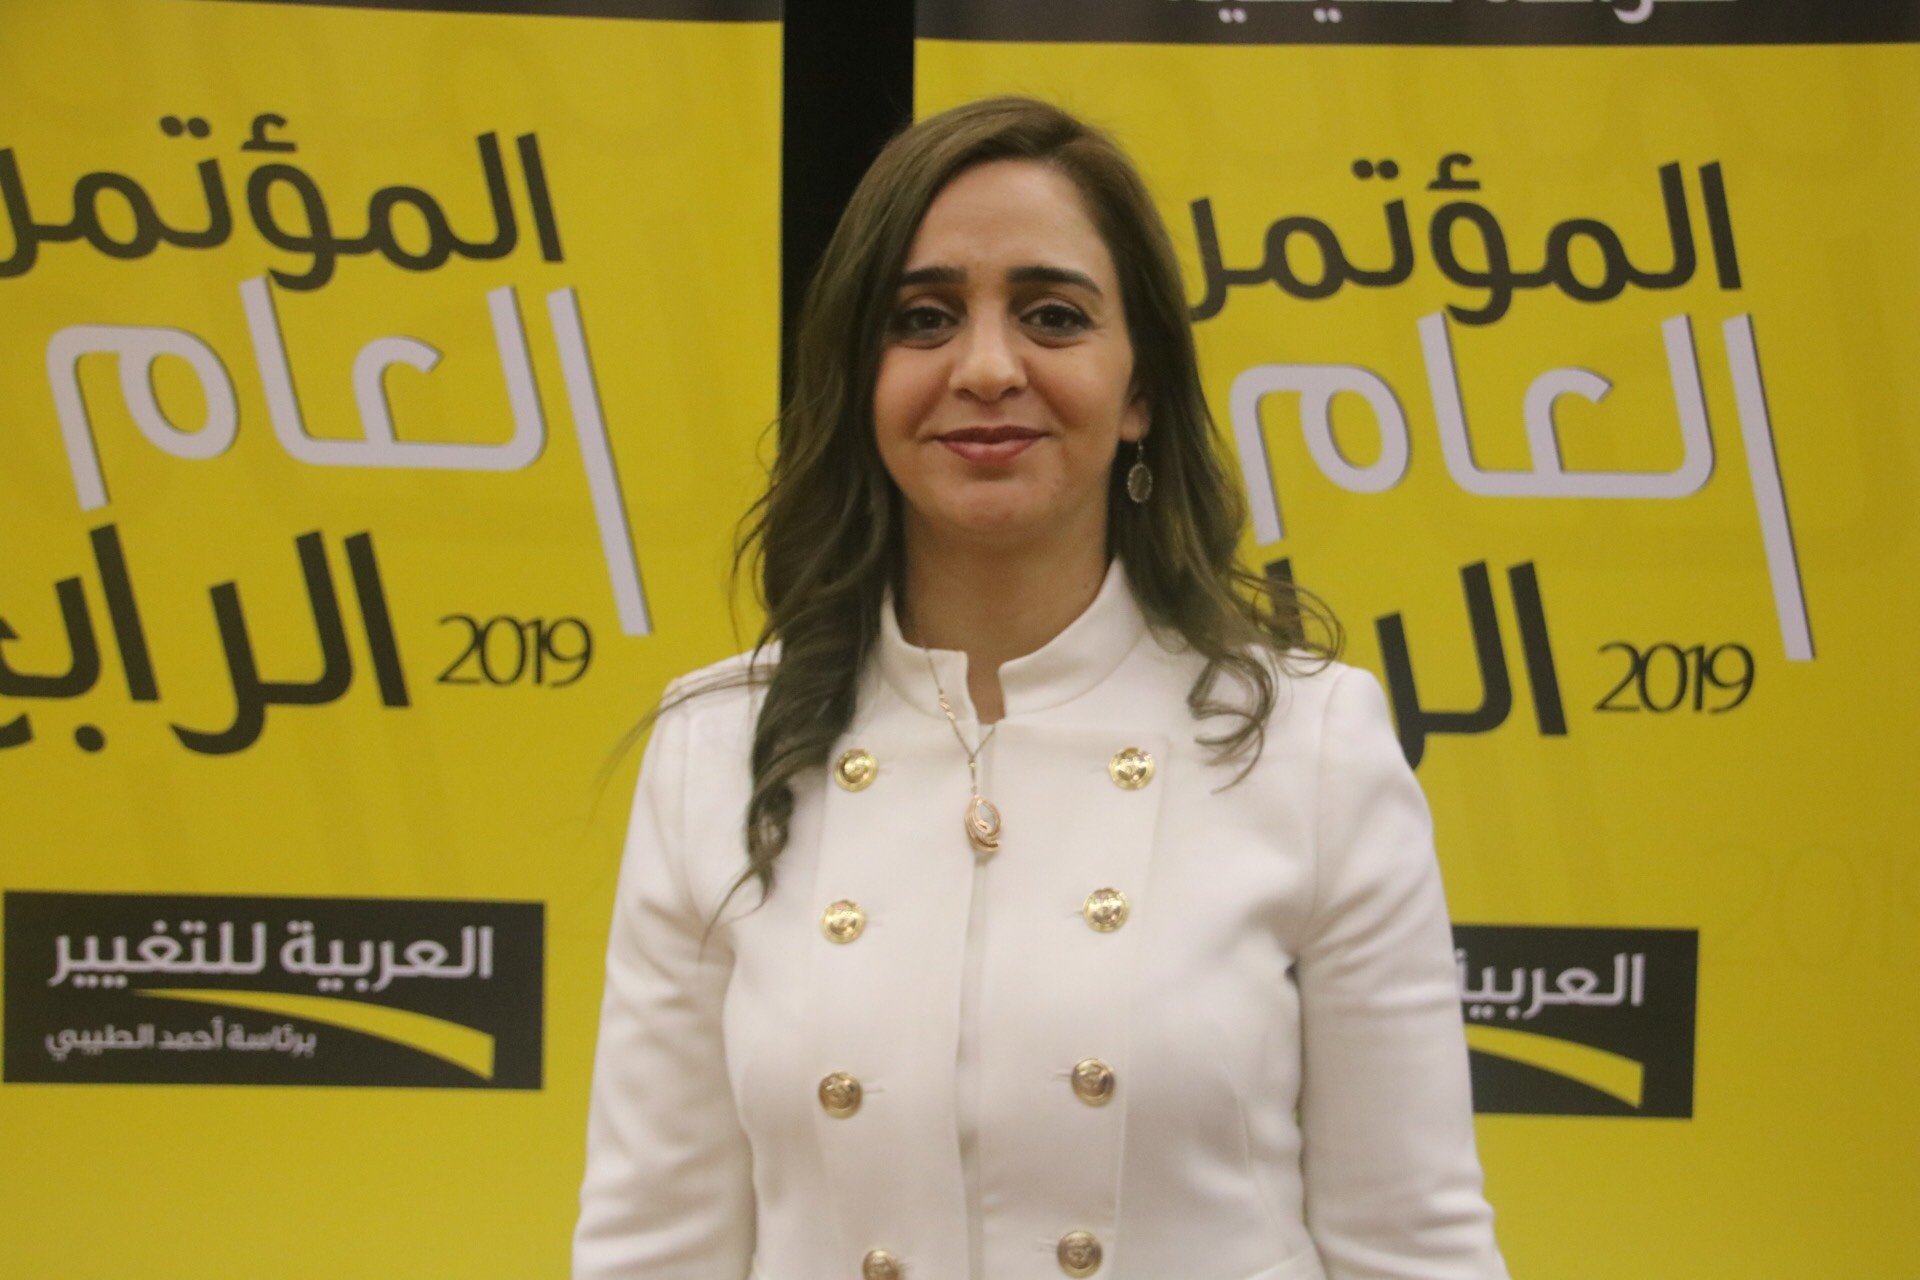 سندس صالح: في حال لم تصوتوا للعربية للتغيير، امنحوا أصواتكم للأحزاب العربيّة-0